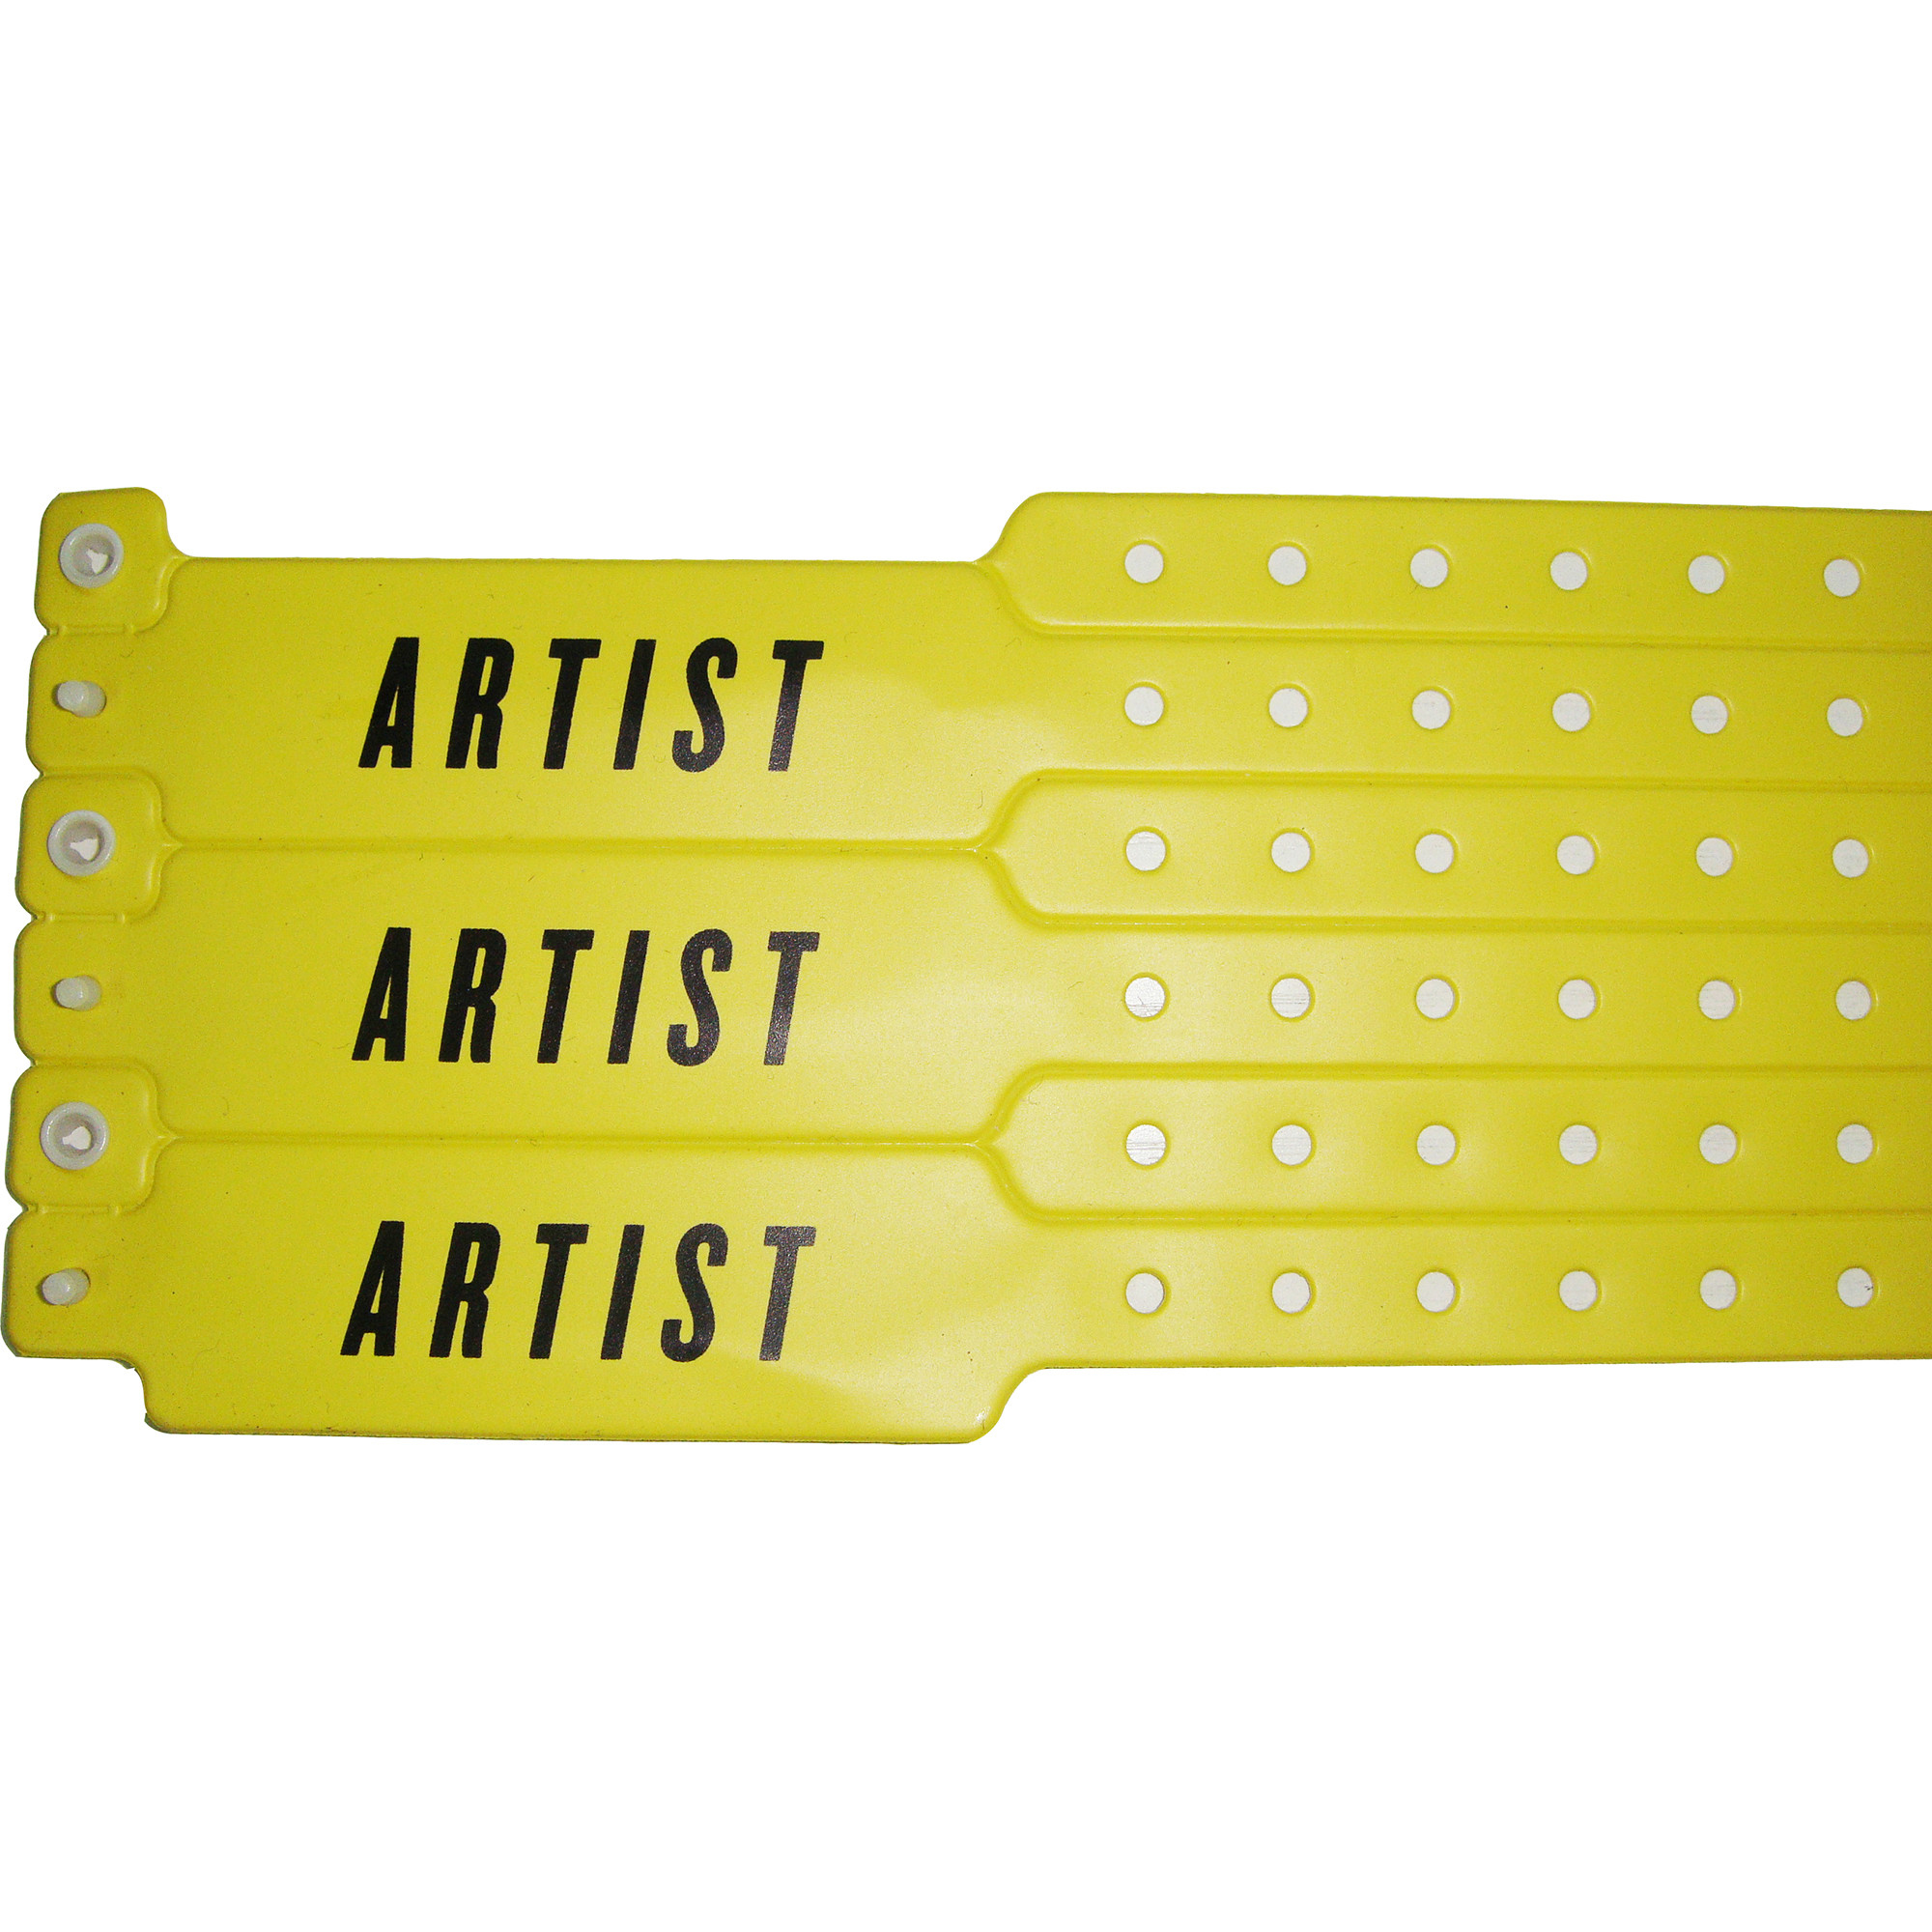 custom soft comfortalble vinyl wristband for events | EVPW5003